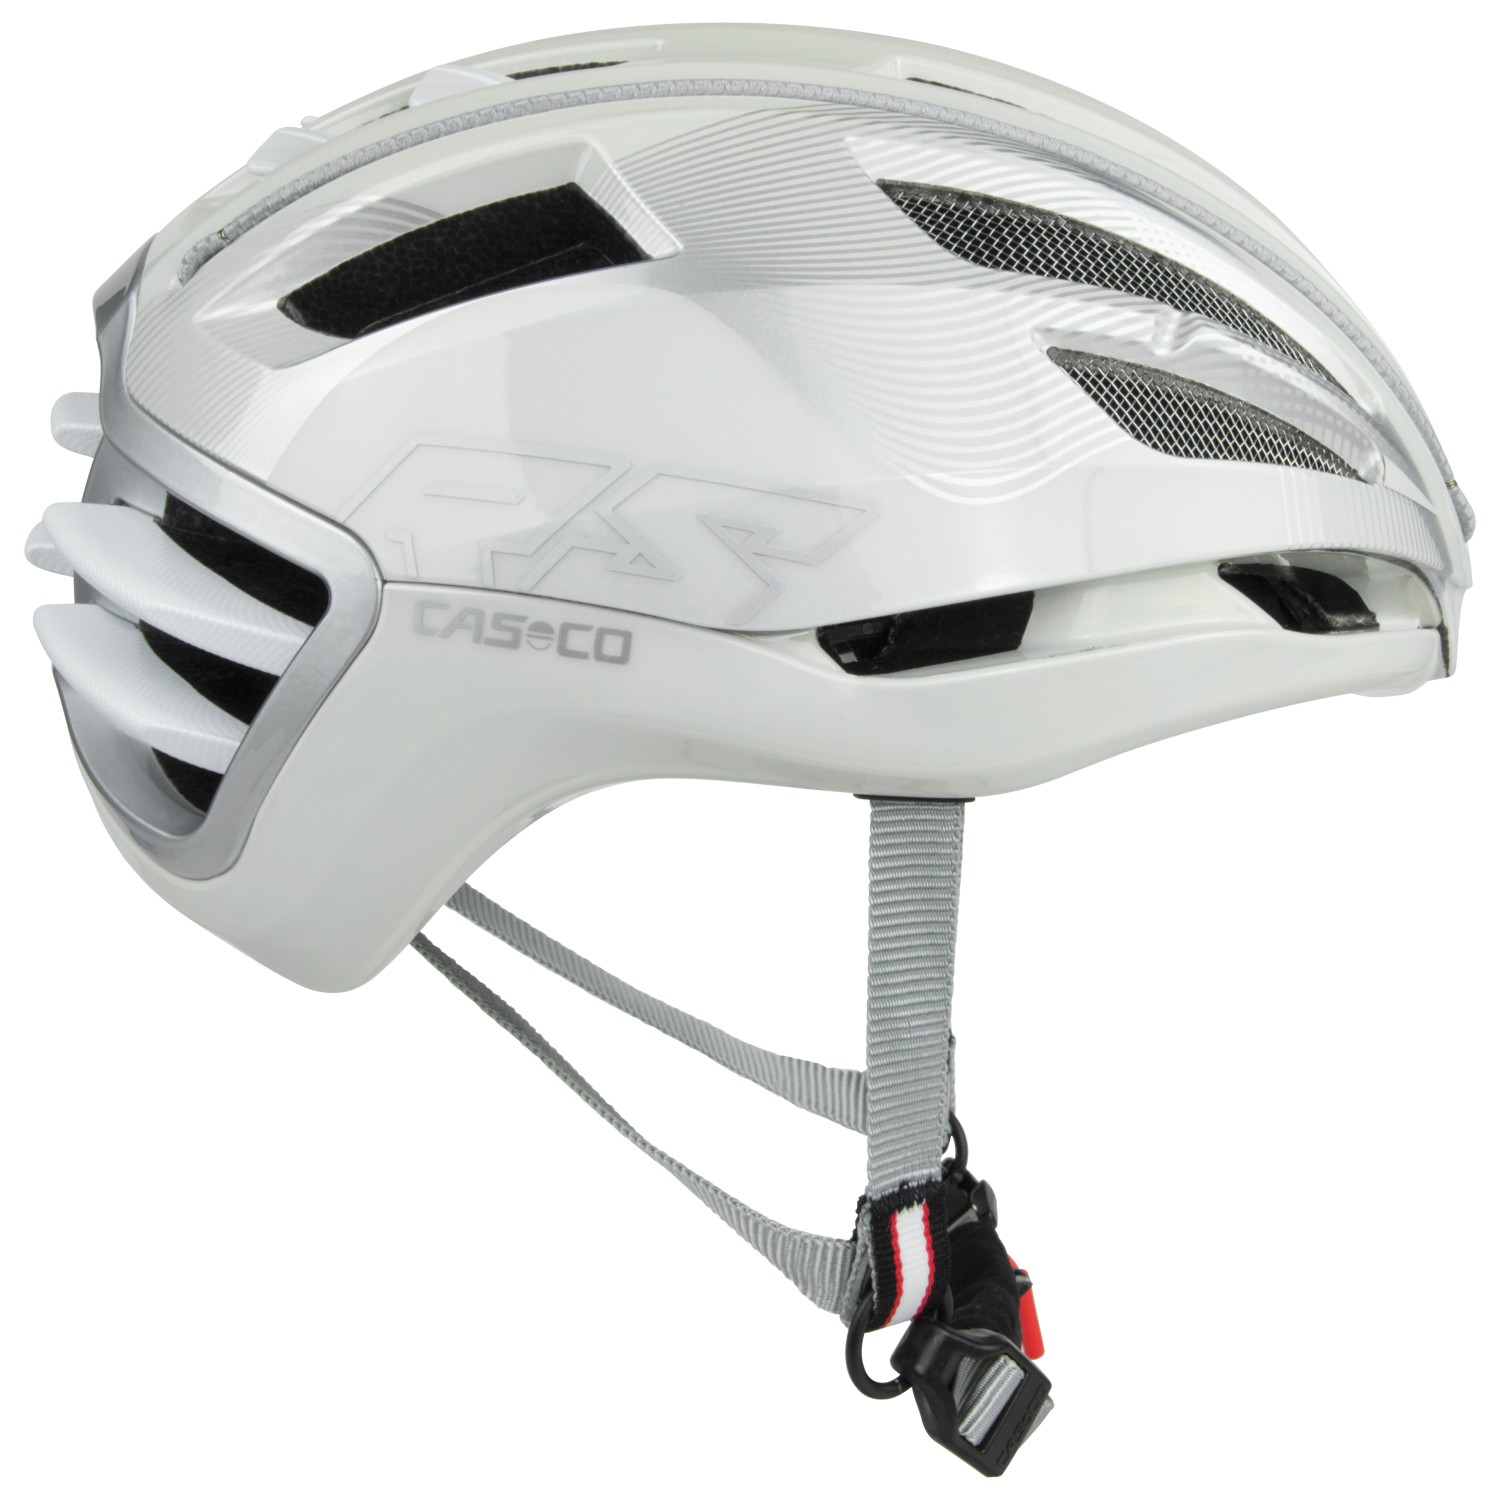 Велосипедный шлем Casco Speedairo2, цвет White/Silver аксессуары casco для мотоцикла шлем протектор для носа вентиляционное отверстие для k1 k3sv защитный шлем аксессуары для мотоциклетного шлема